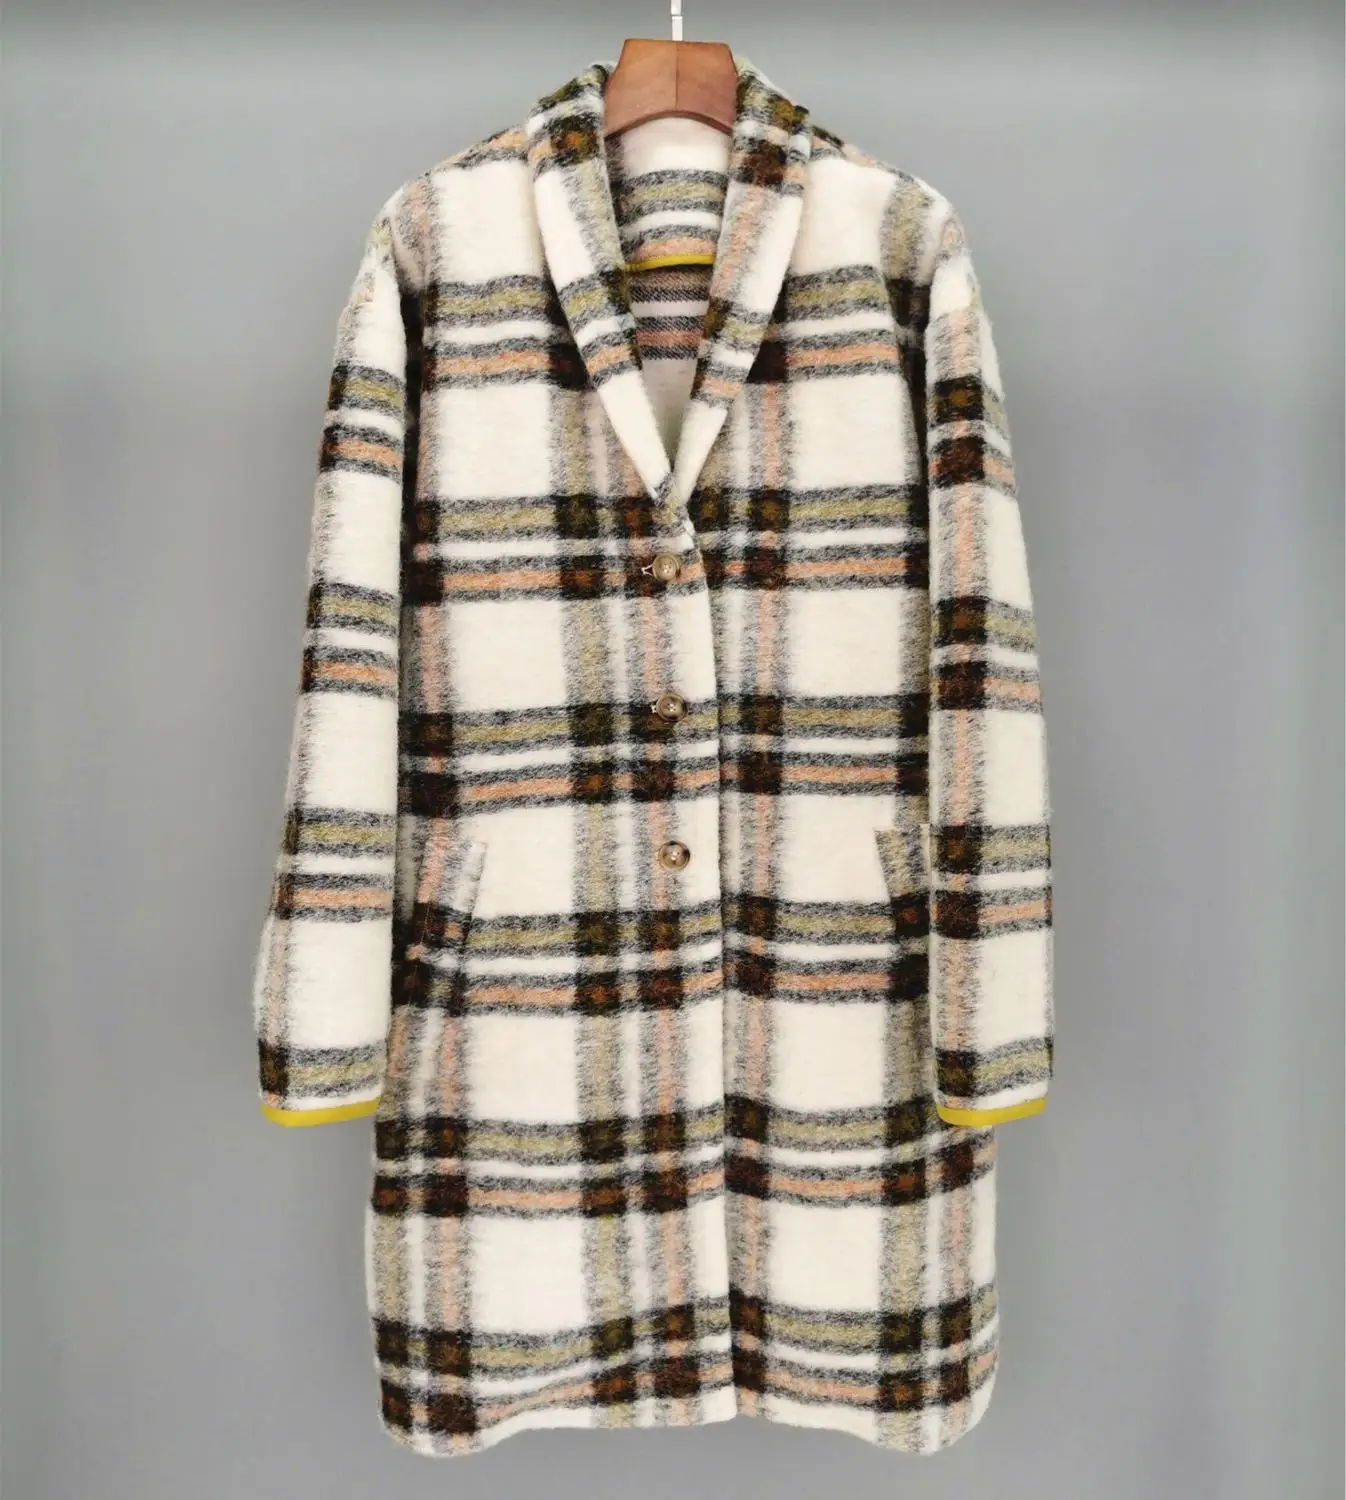 

2019 winner new women plaid wool jacket coat female casual long outerwear OverCoat ddxgz2v 8.23